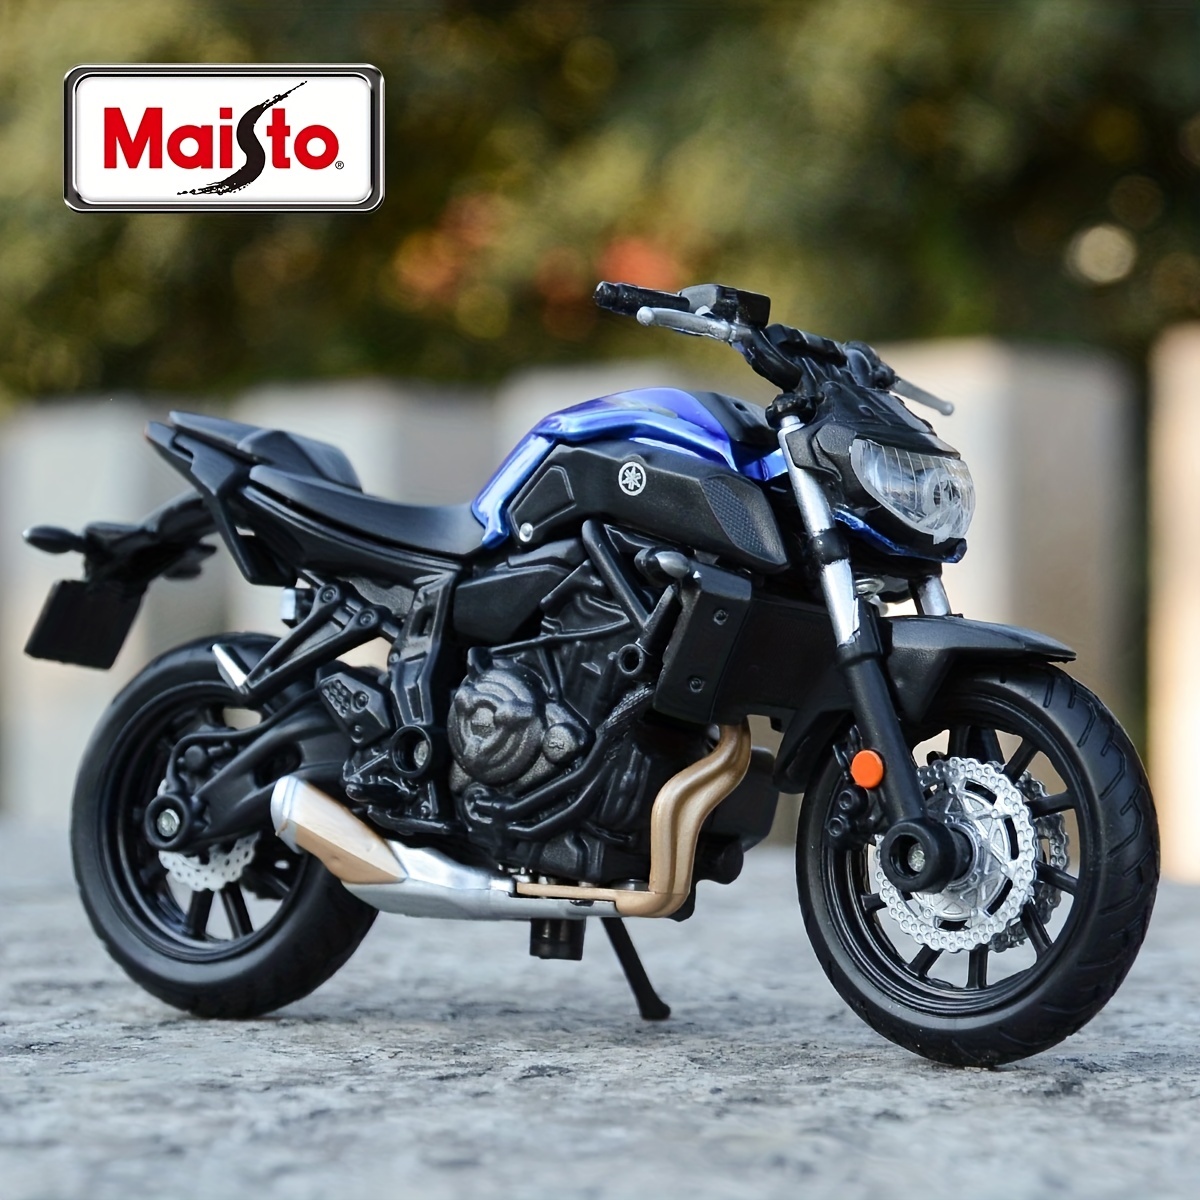 Meccano Ducati Monster 1200 S, la motocicleta hecha juguete